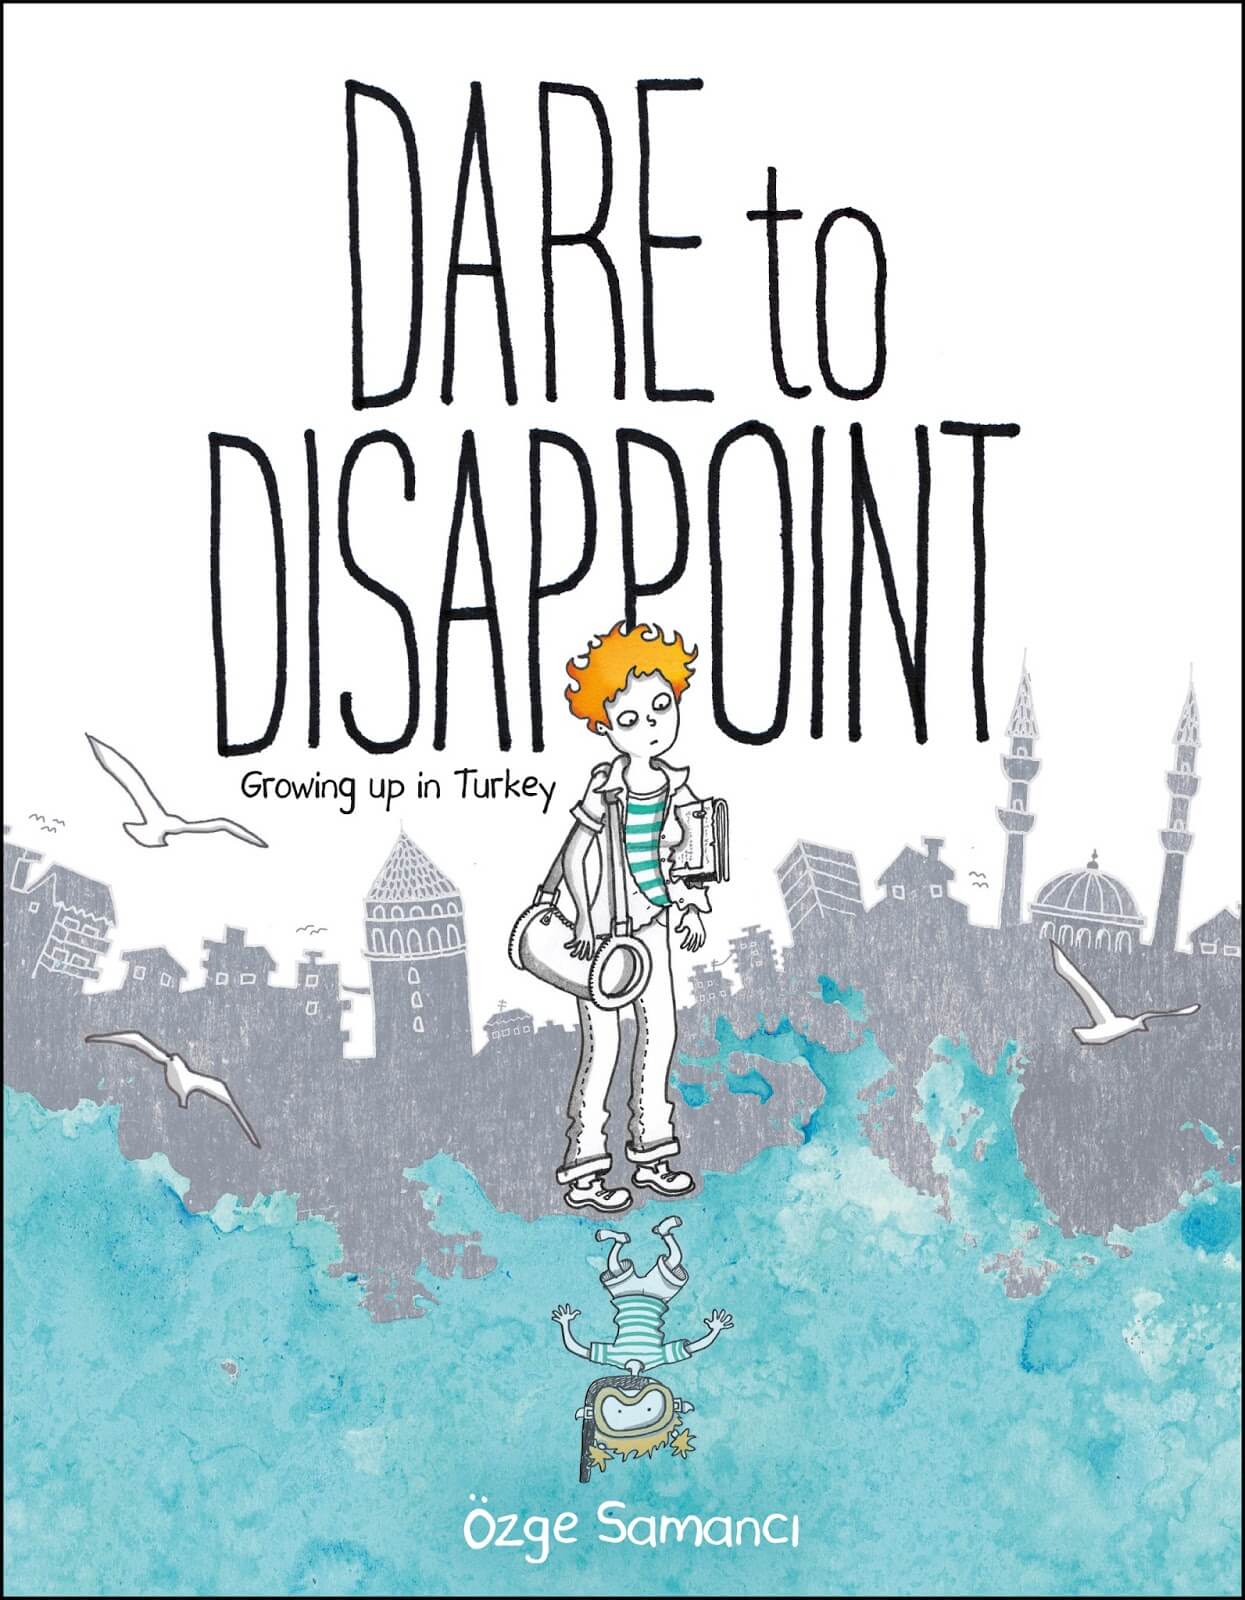 Buchcover Özge Samancıs Graphic Novel "Dare to disappoint. Growing up in Turkey"; herausgegeben von Farrar, Straus und Giroux